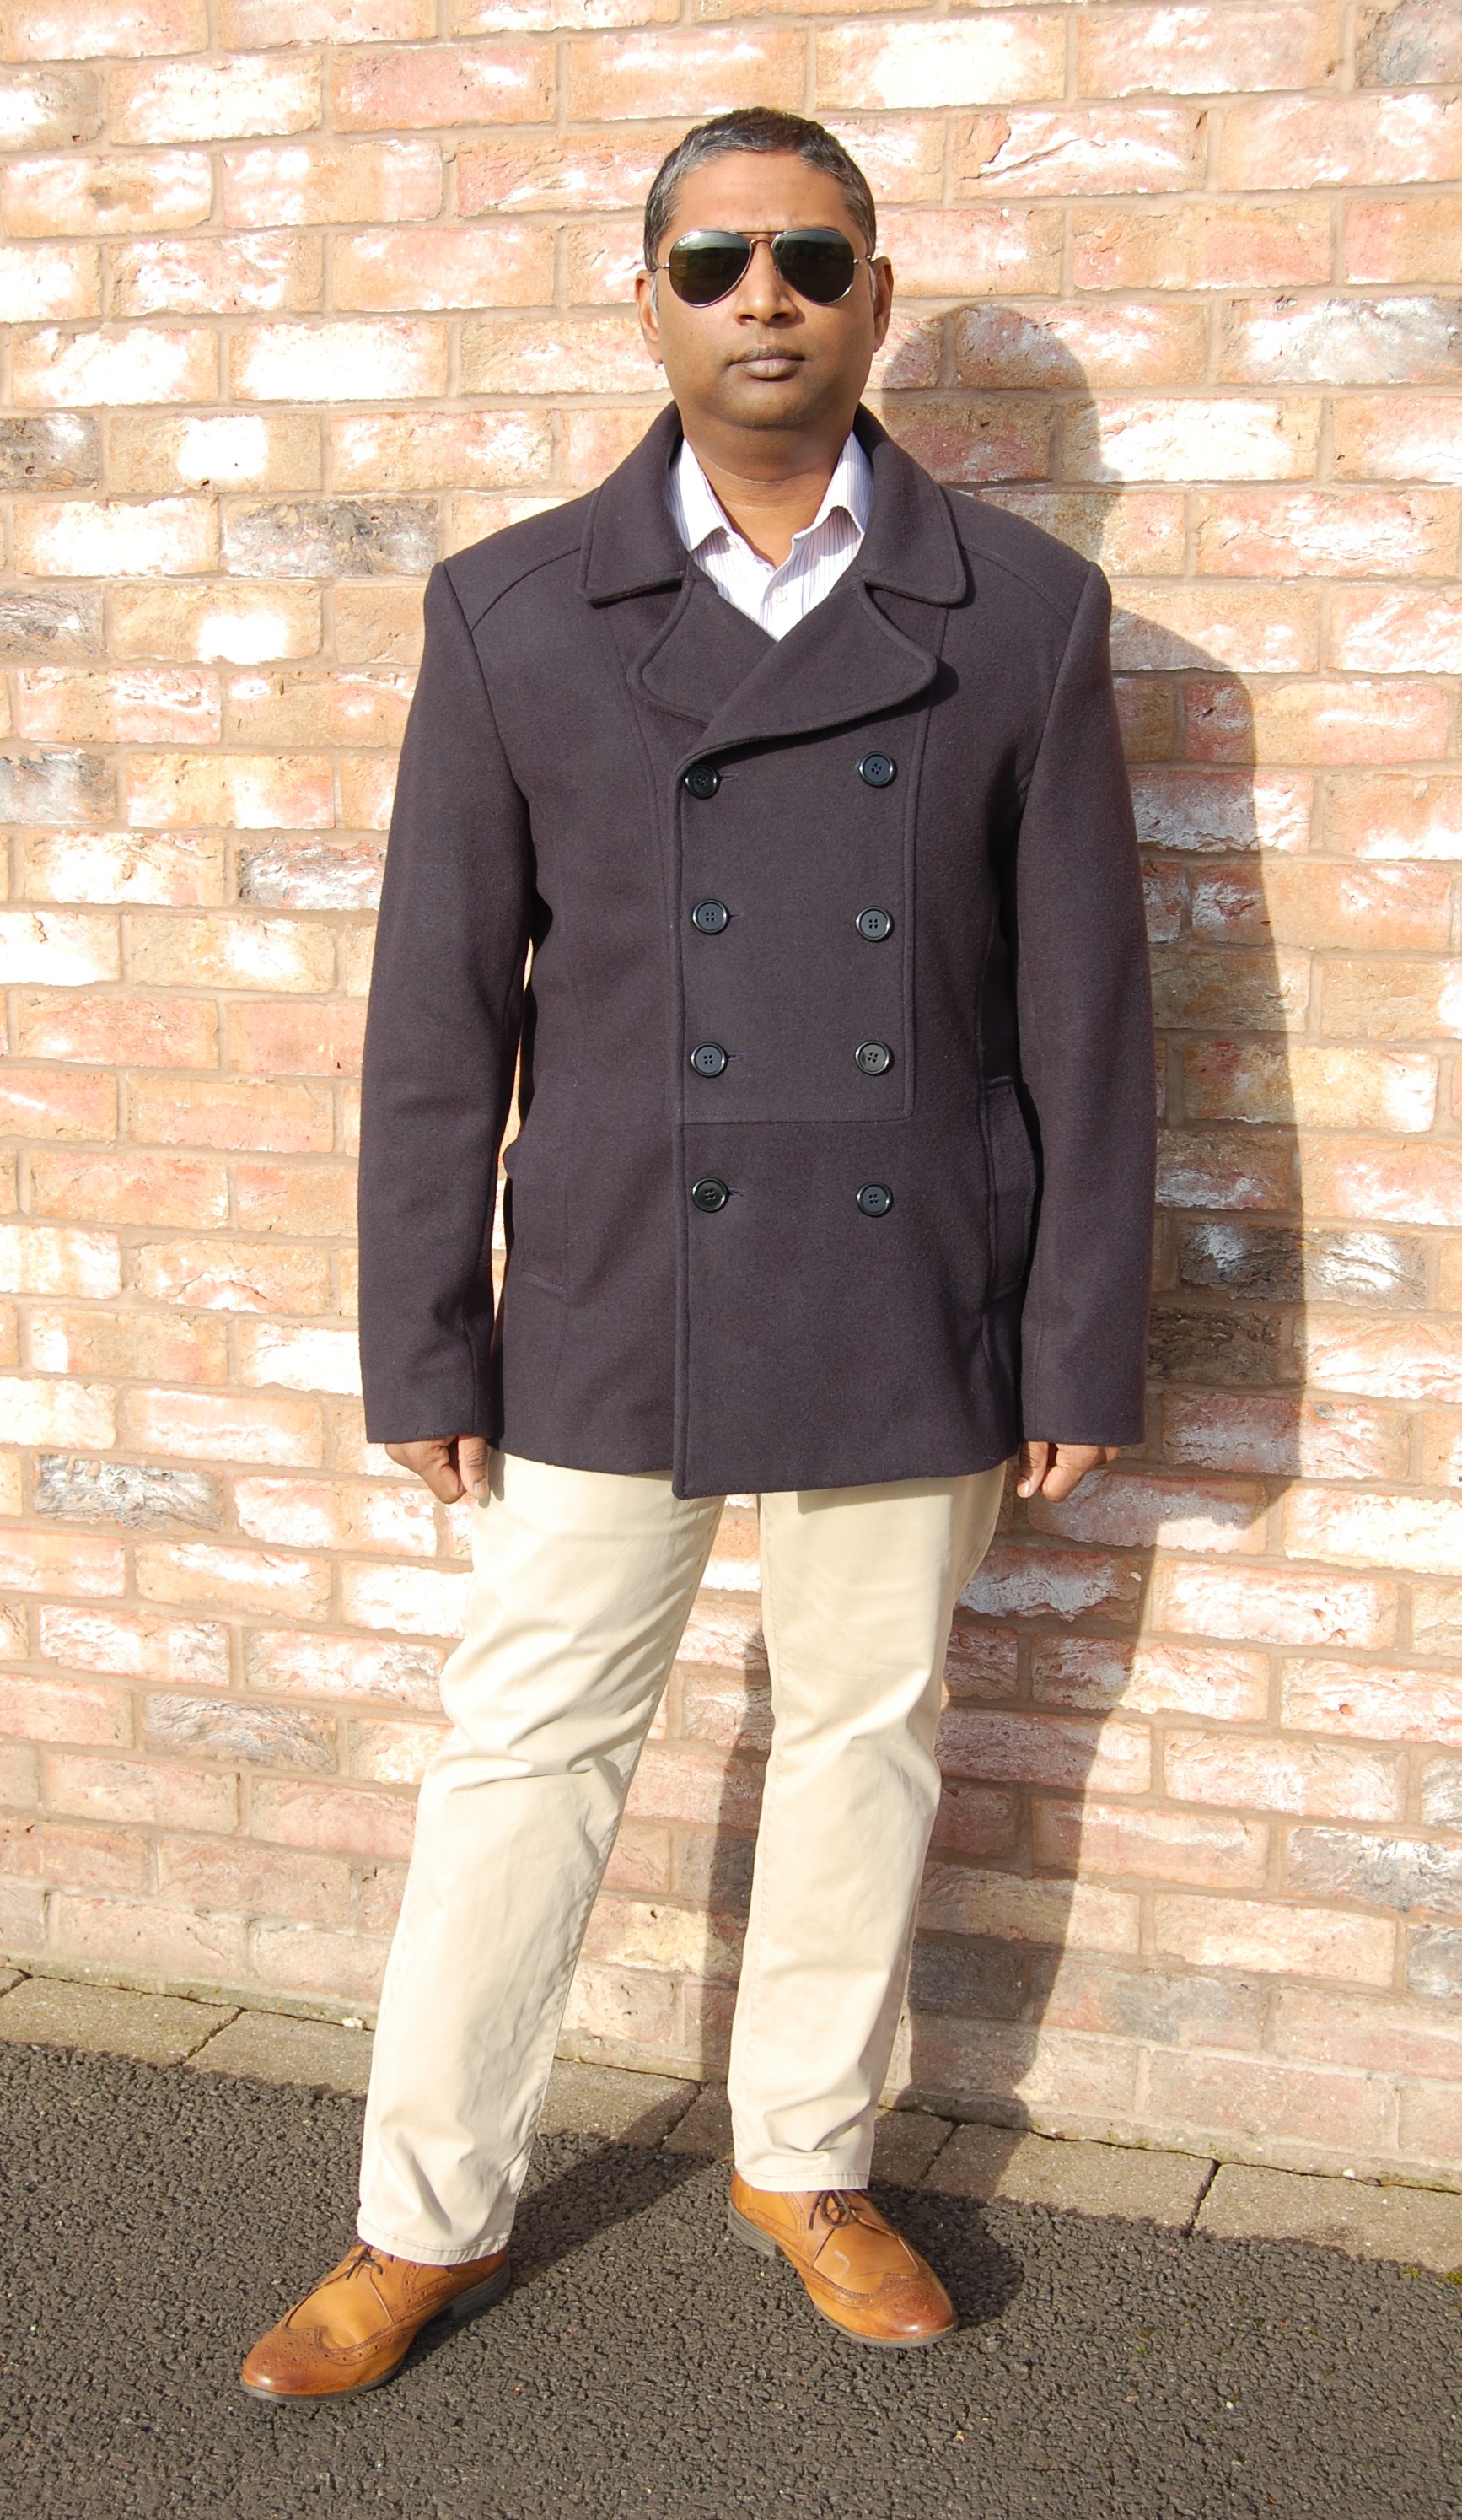 セール価格で購入 Wool Jacket Double Melton テーラードジャケット